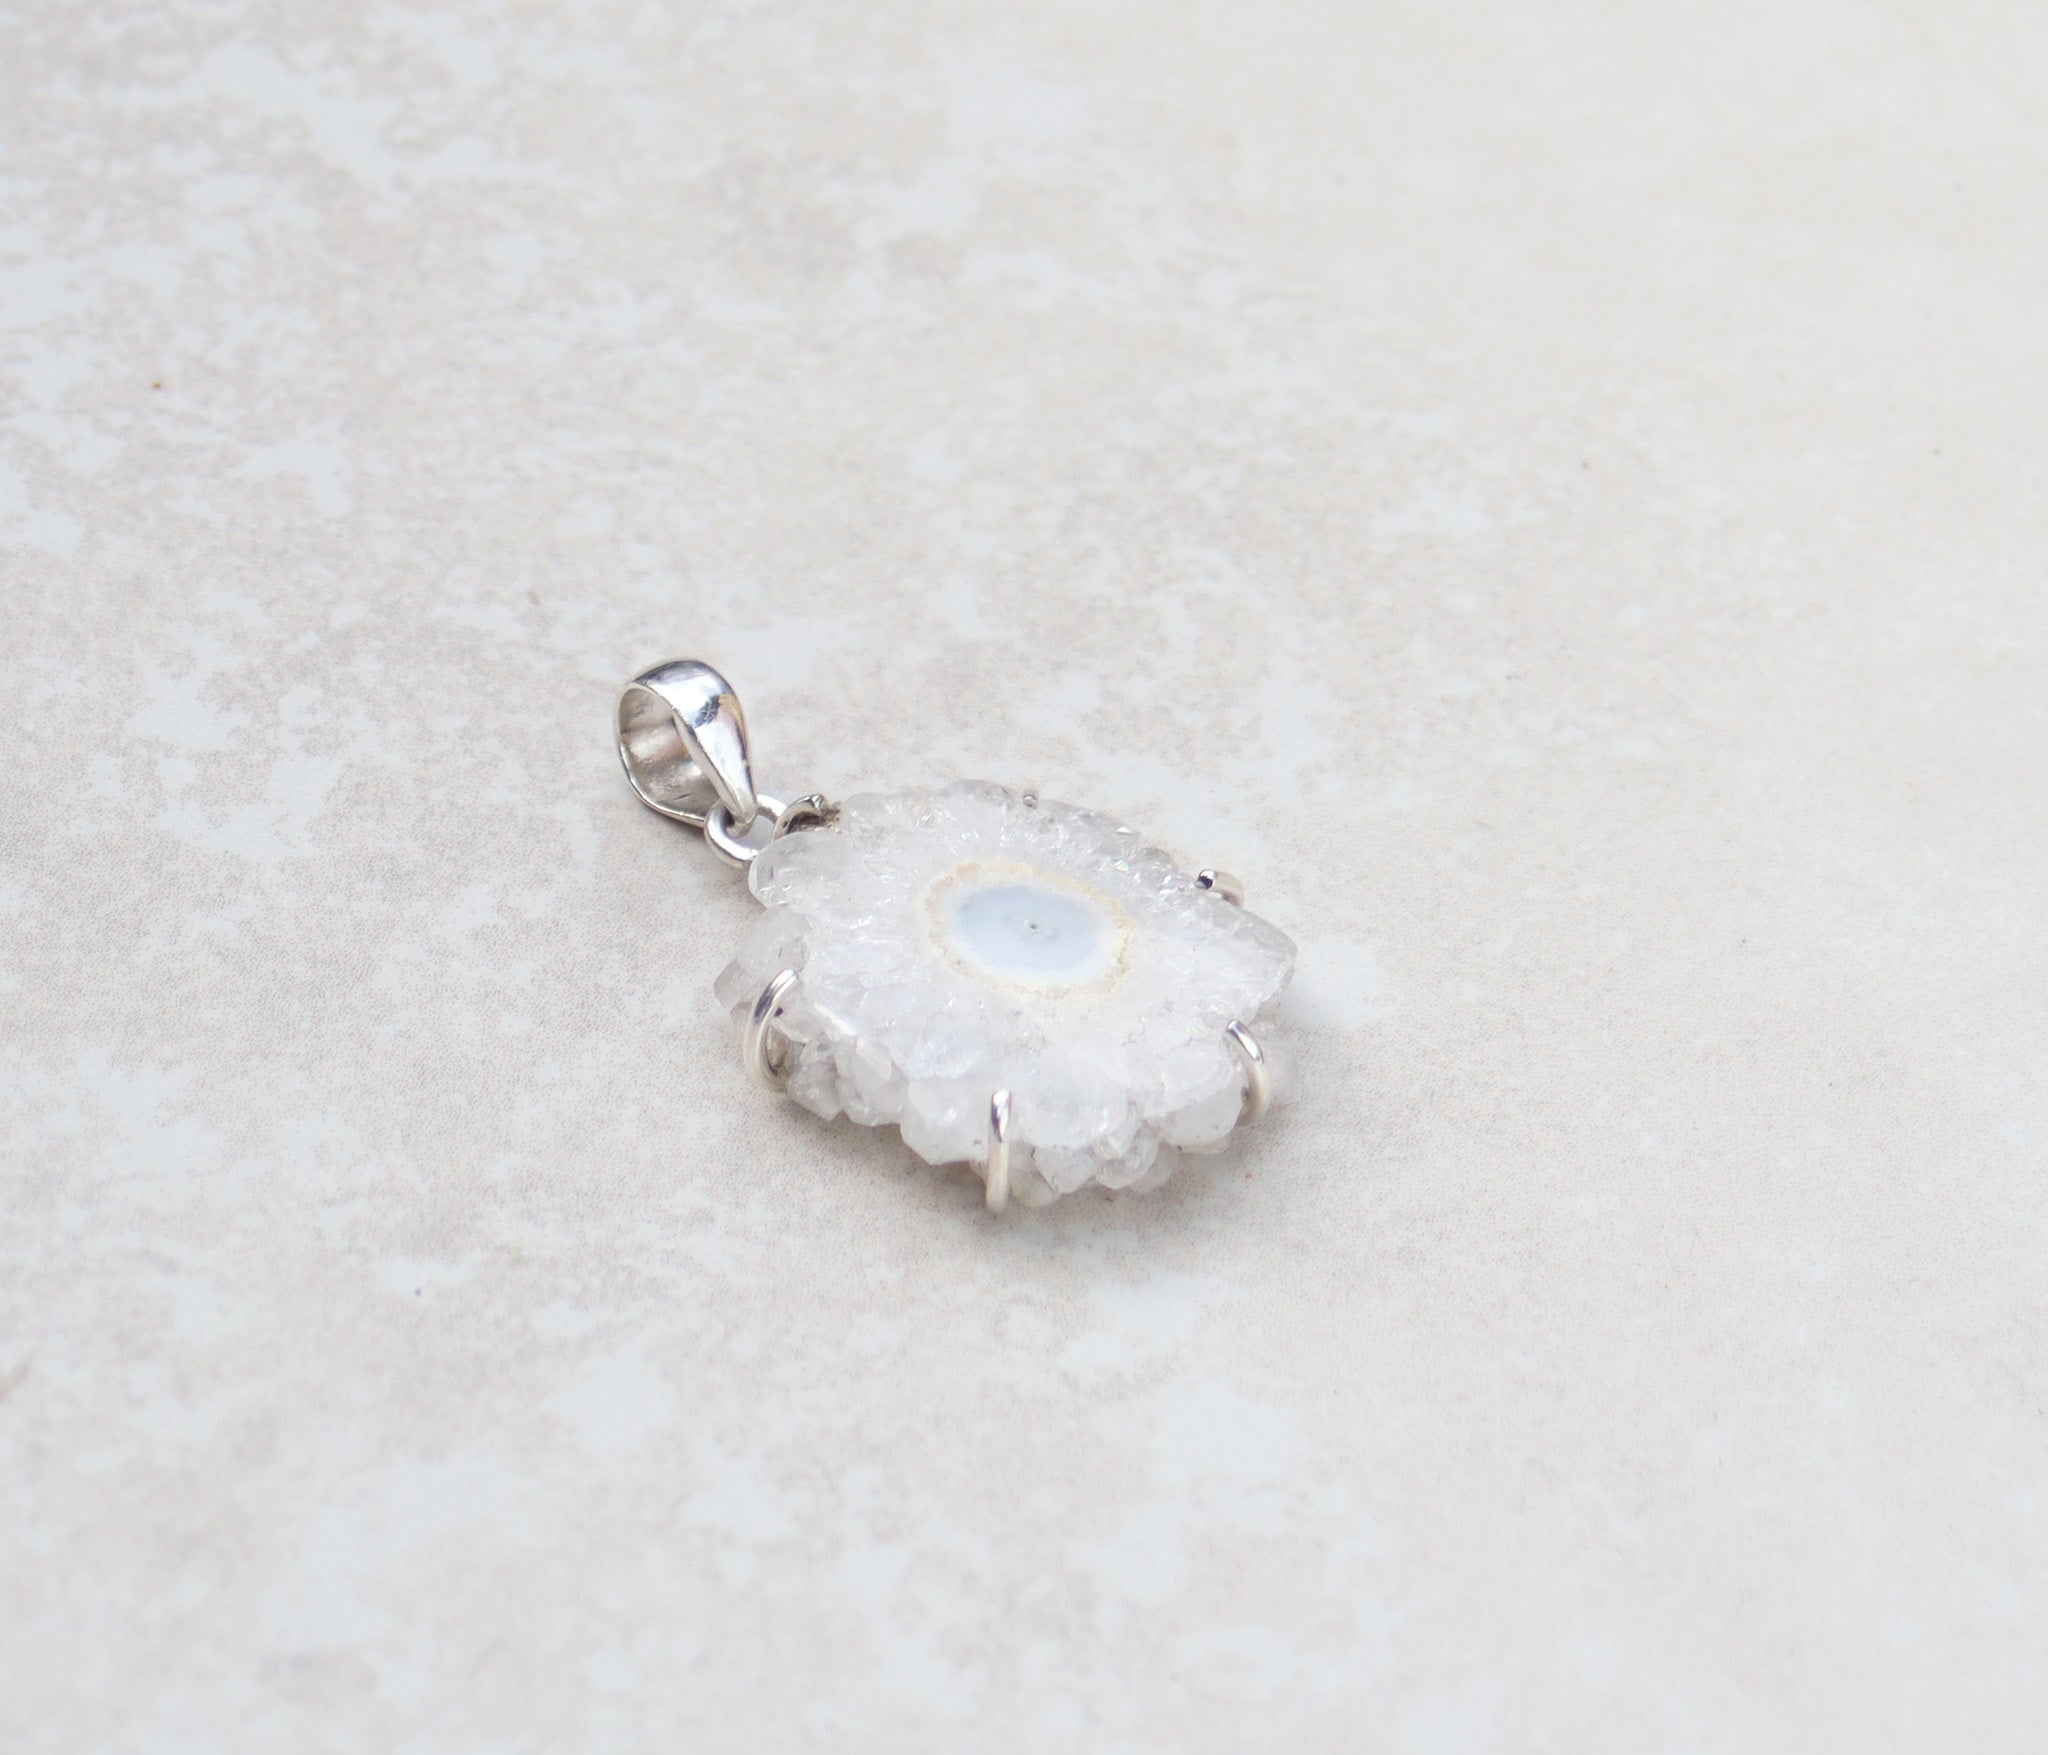 Silver quartz flower pendant